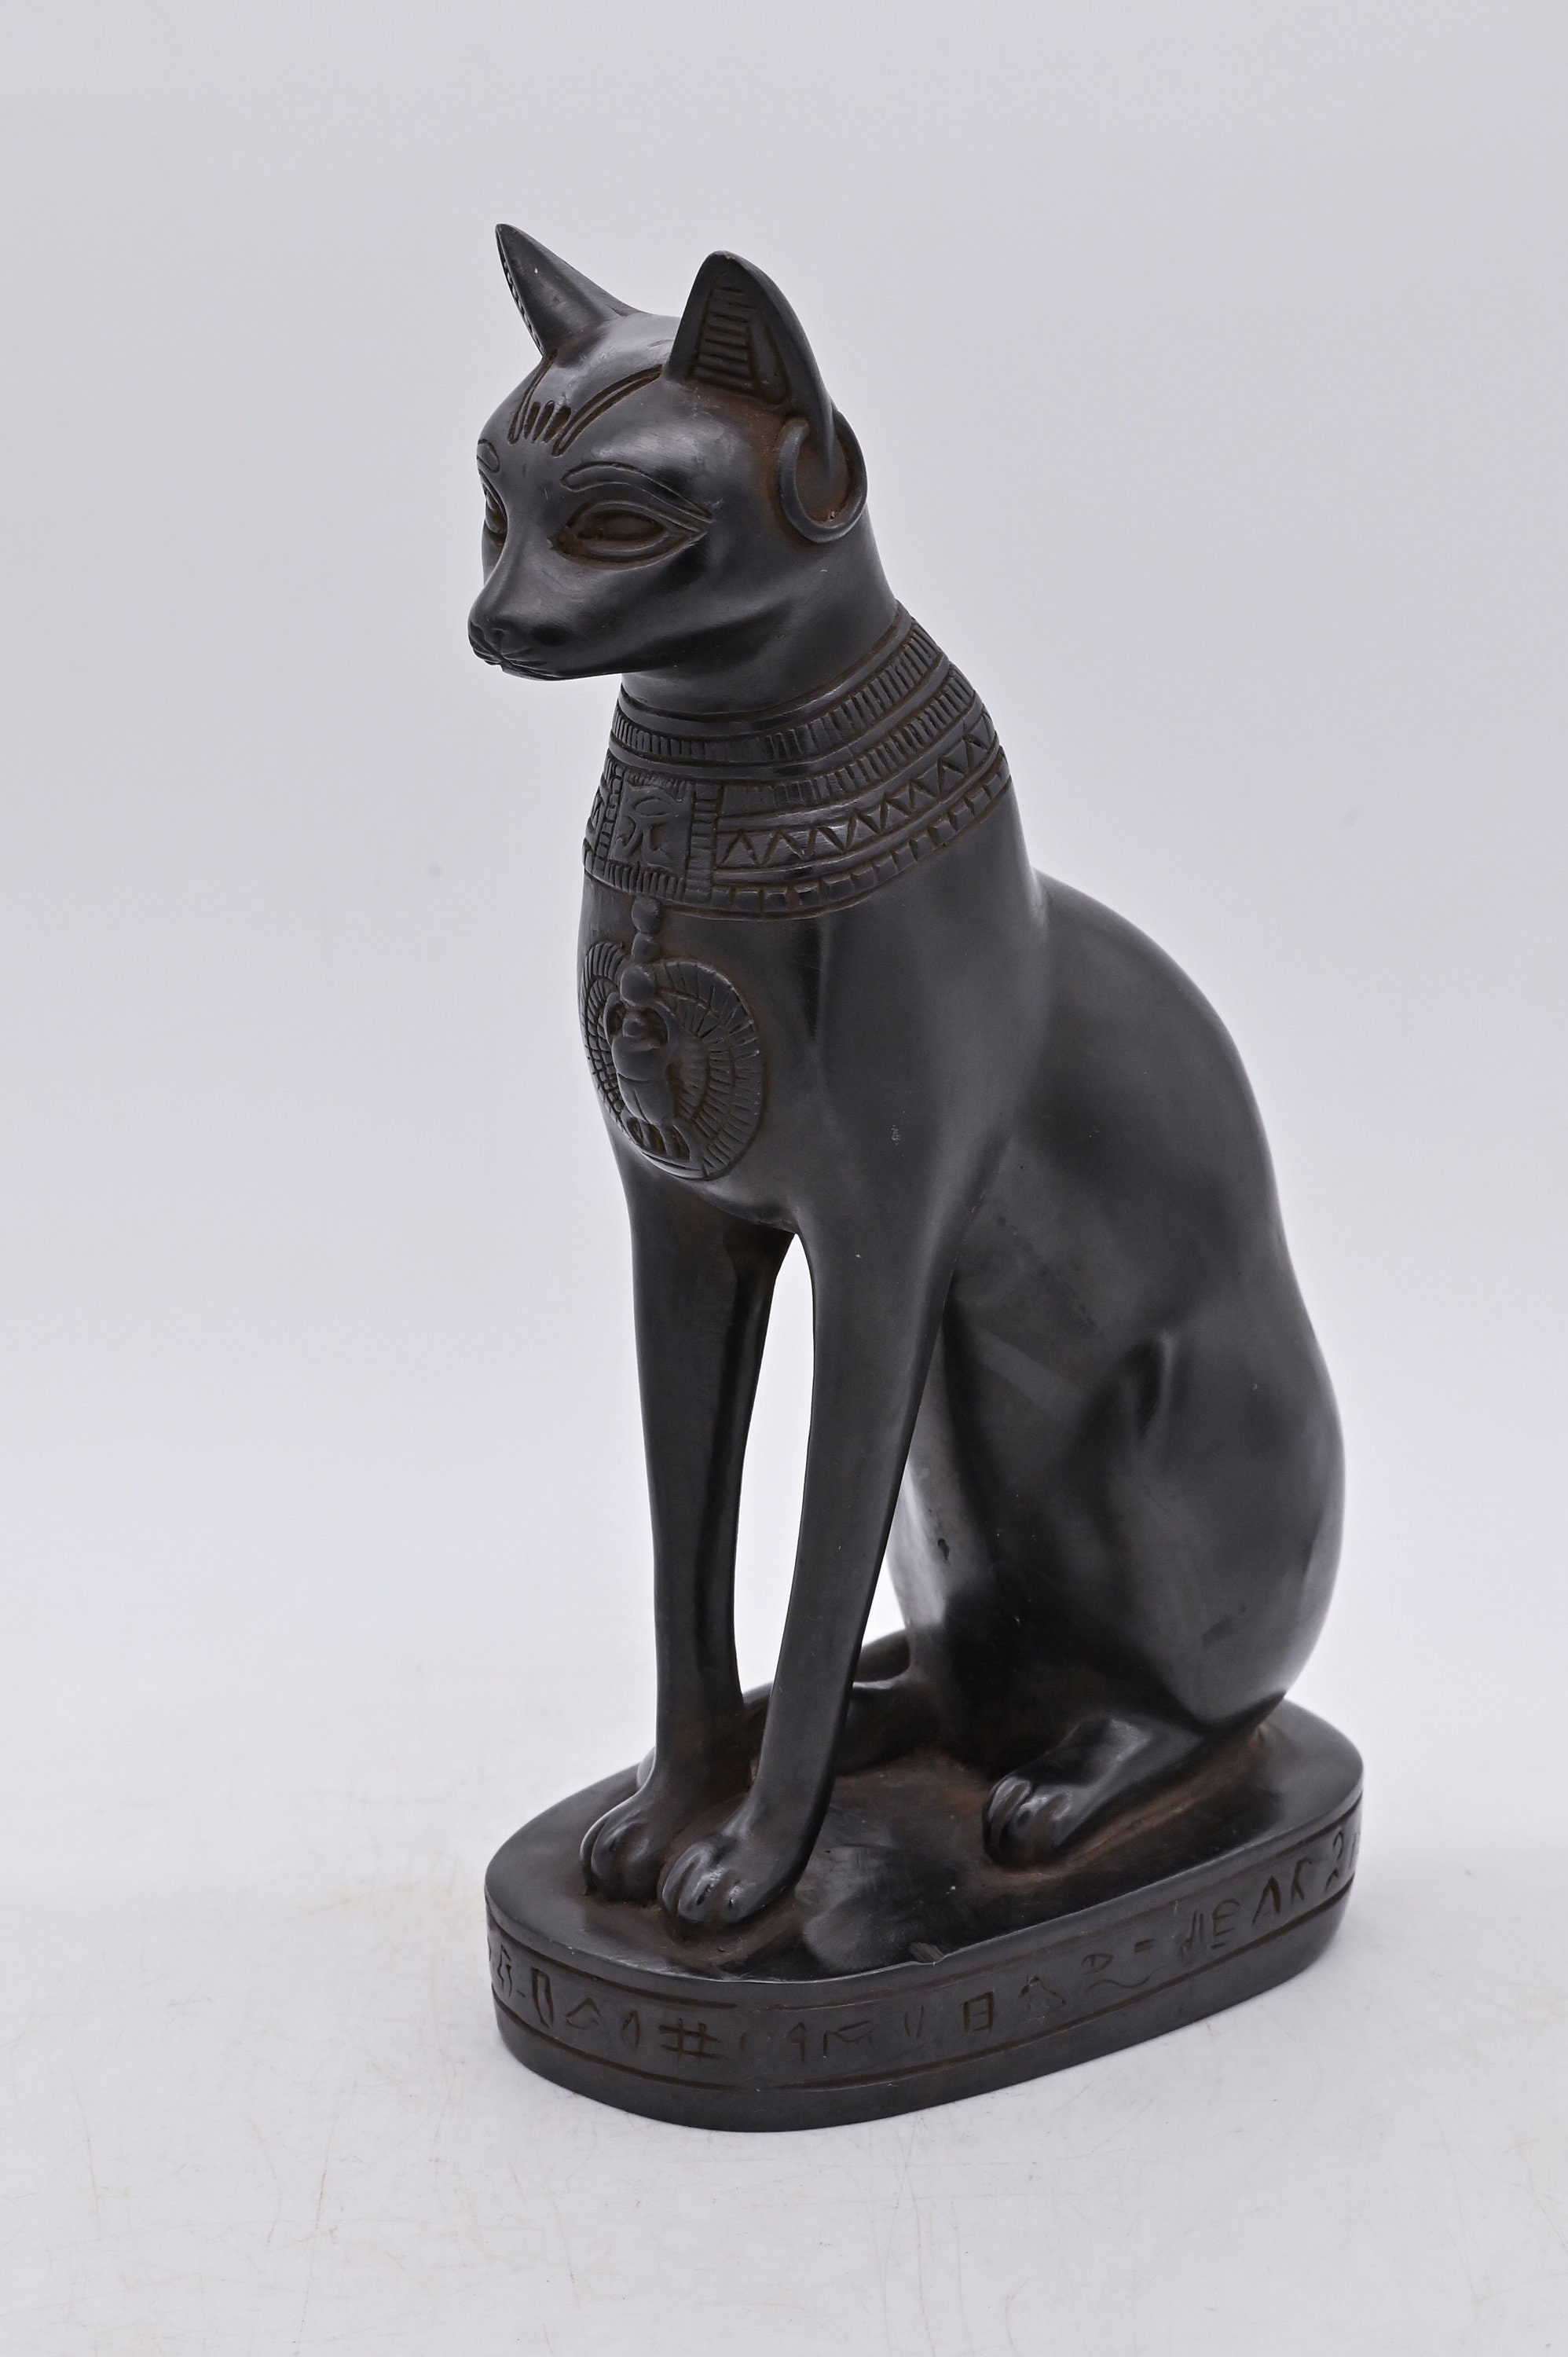 Un des plus beaux chats égyptiens connus : une rare sculpture de la déesse  Bastet adjugée plus d'1 million d'euros